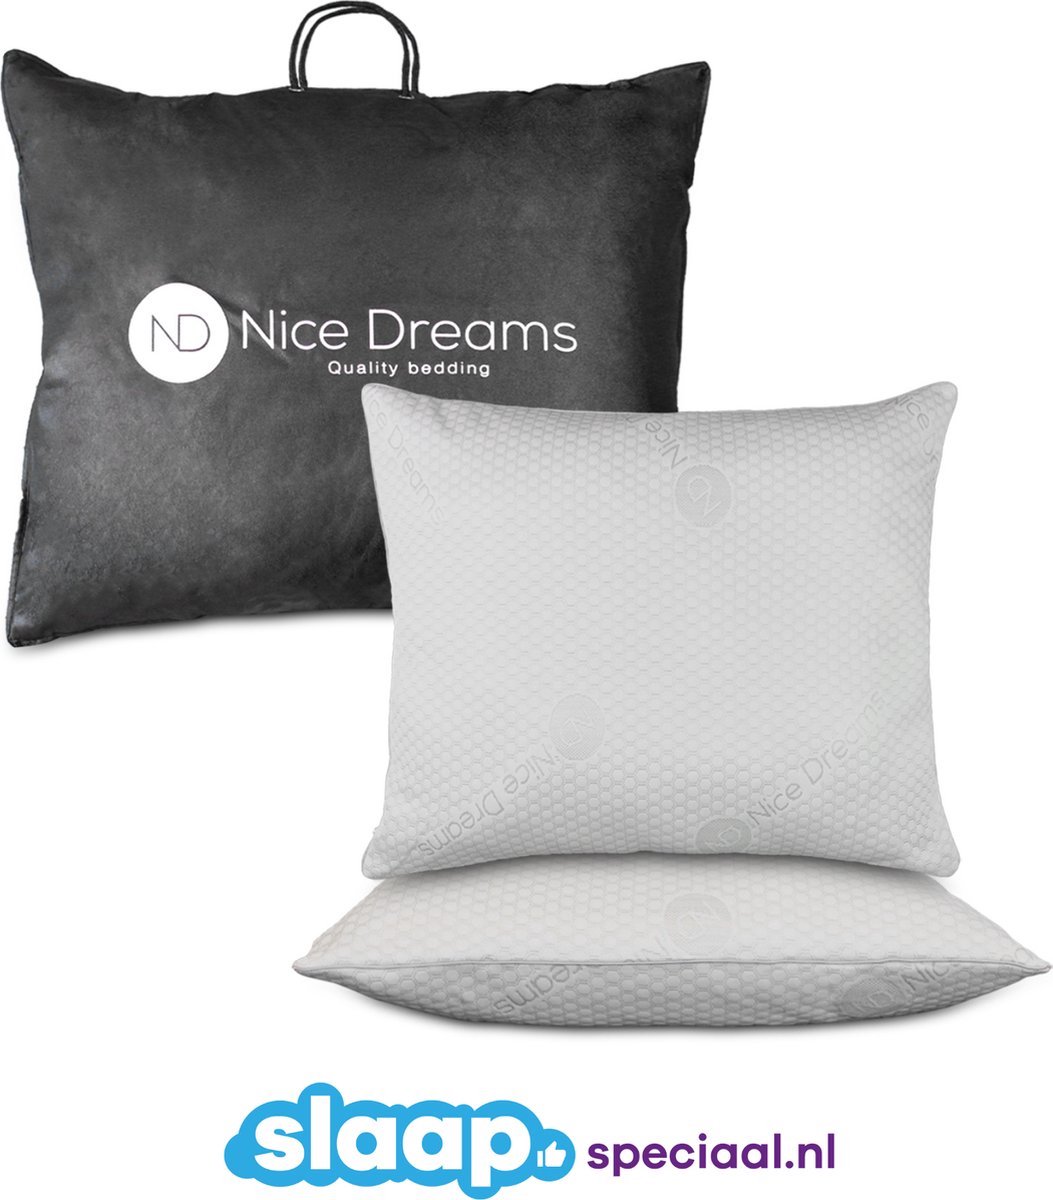 Nice Dreams Sleepjust Hoofdkussen 60x70 cm Duopack Cooltouch Verkoelend Effect